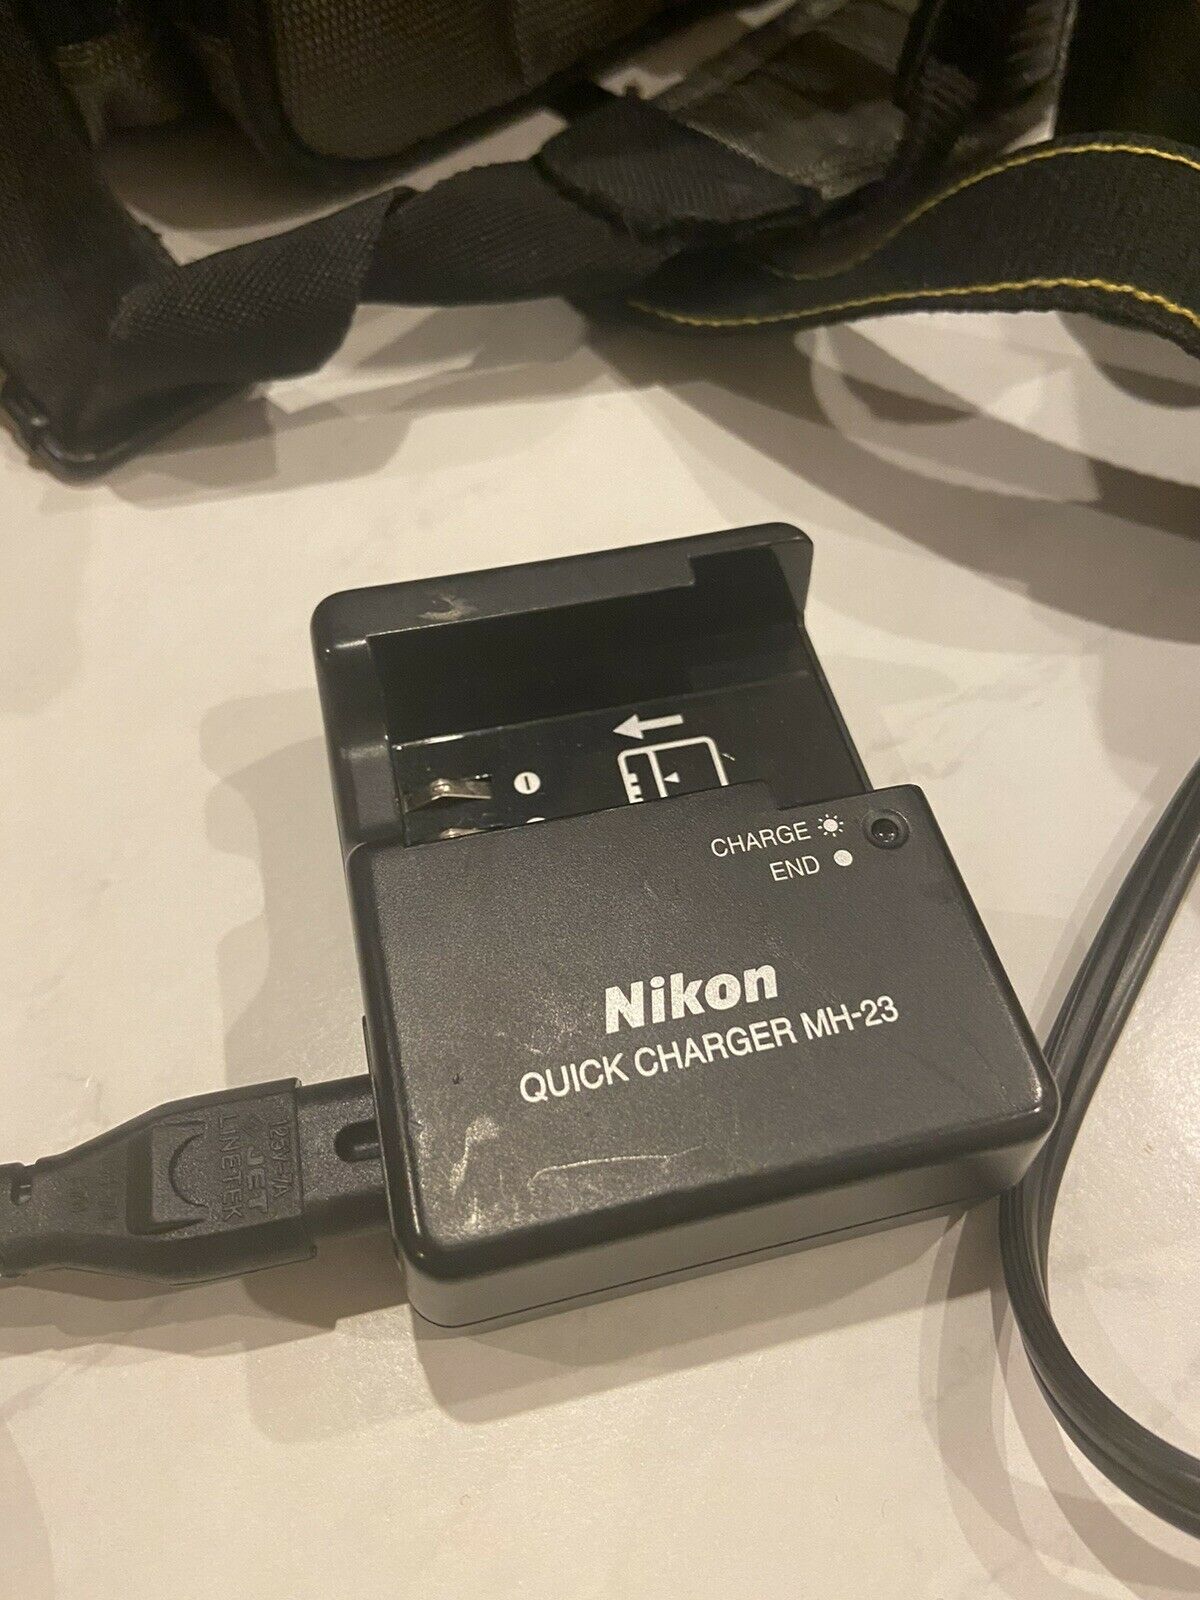 Nikon D3000 10.2 MP Digital SLR Camera (AF-S DX VR) & 18-55mm Lens w/ Bag